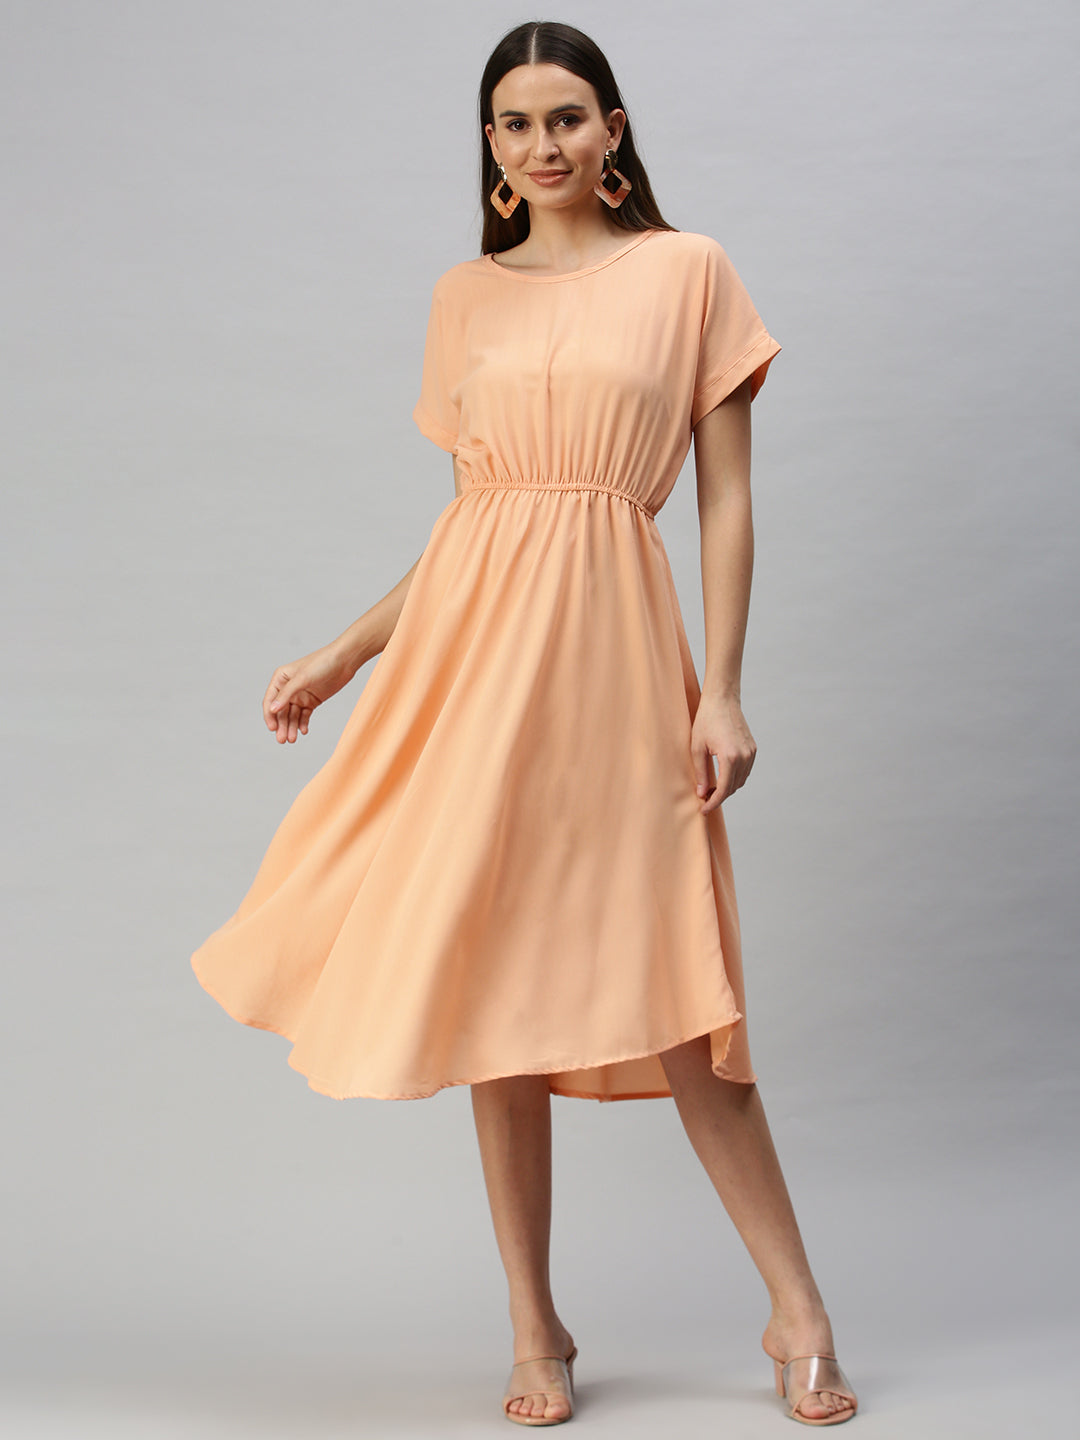 Women's A-Line Peach Dress